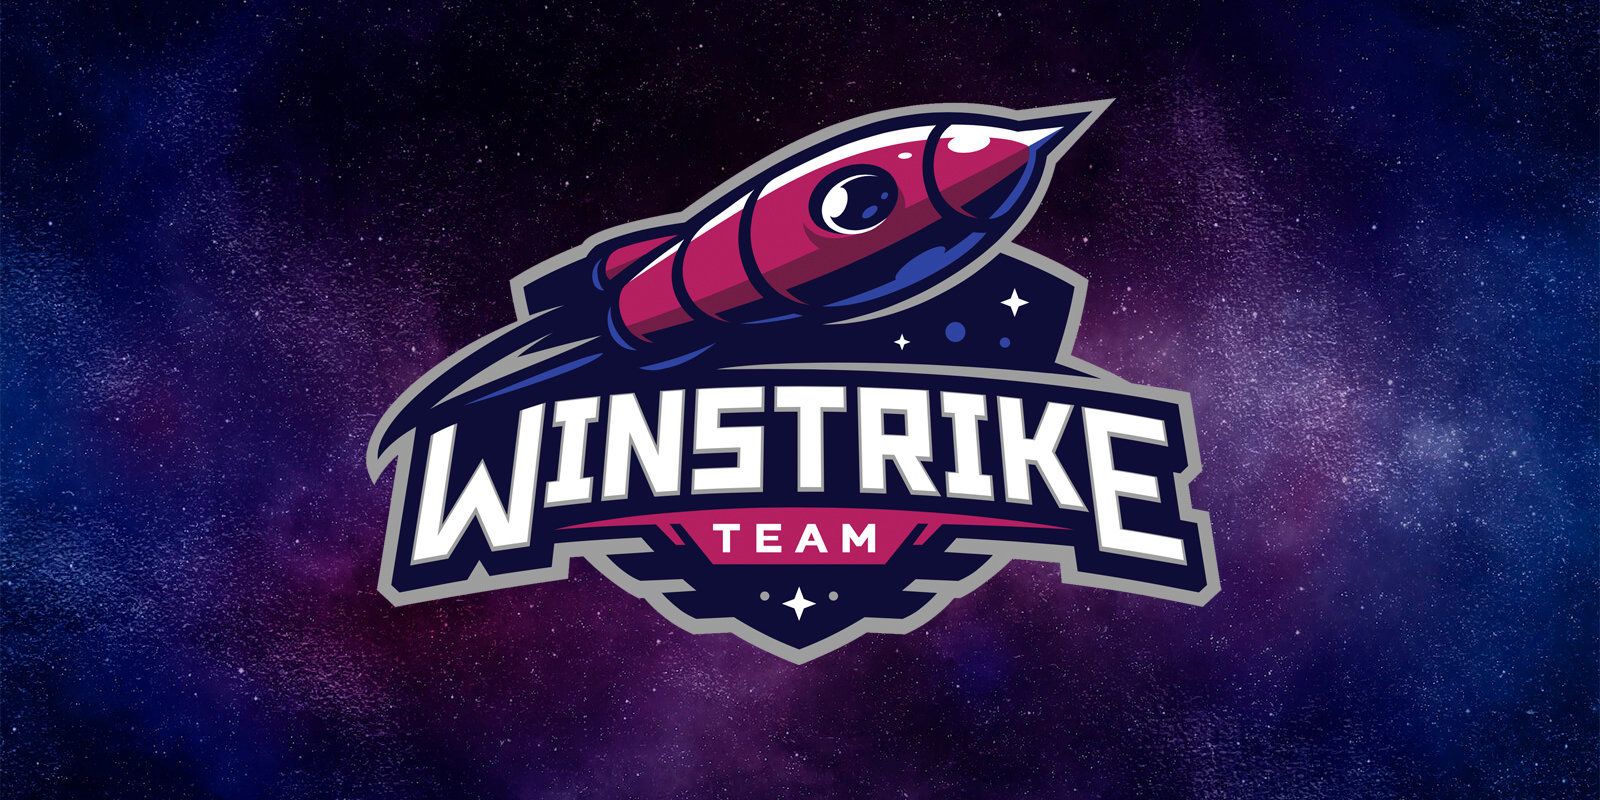 Бывший состав Winstrike по CS:GO будет выступать под новым тегом